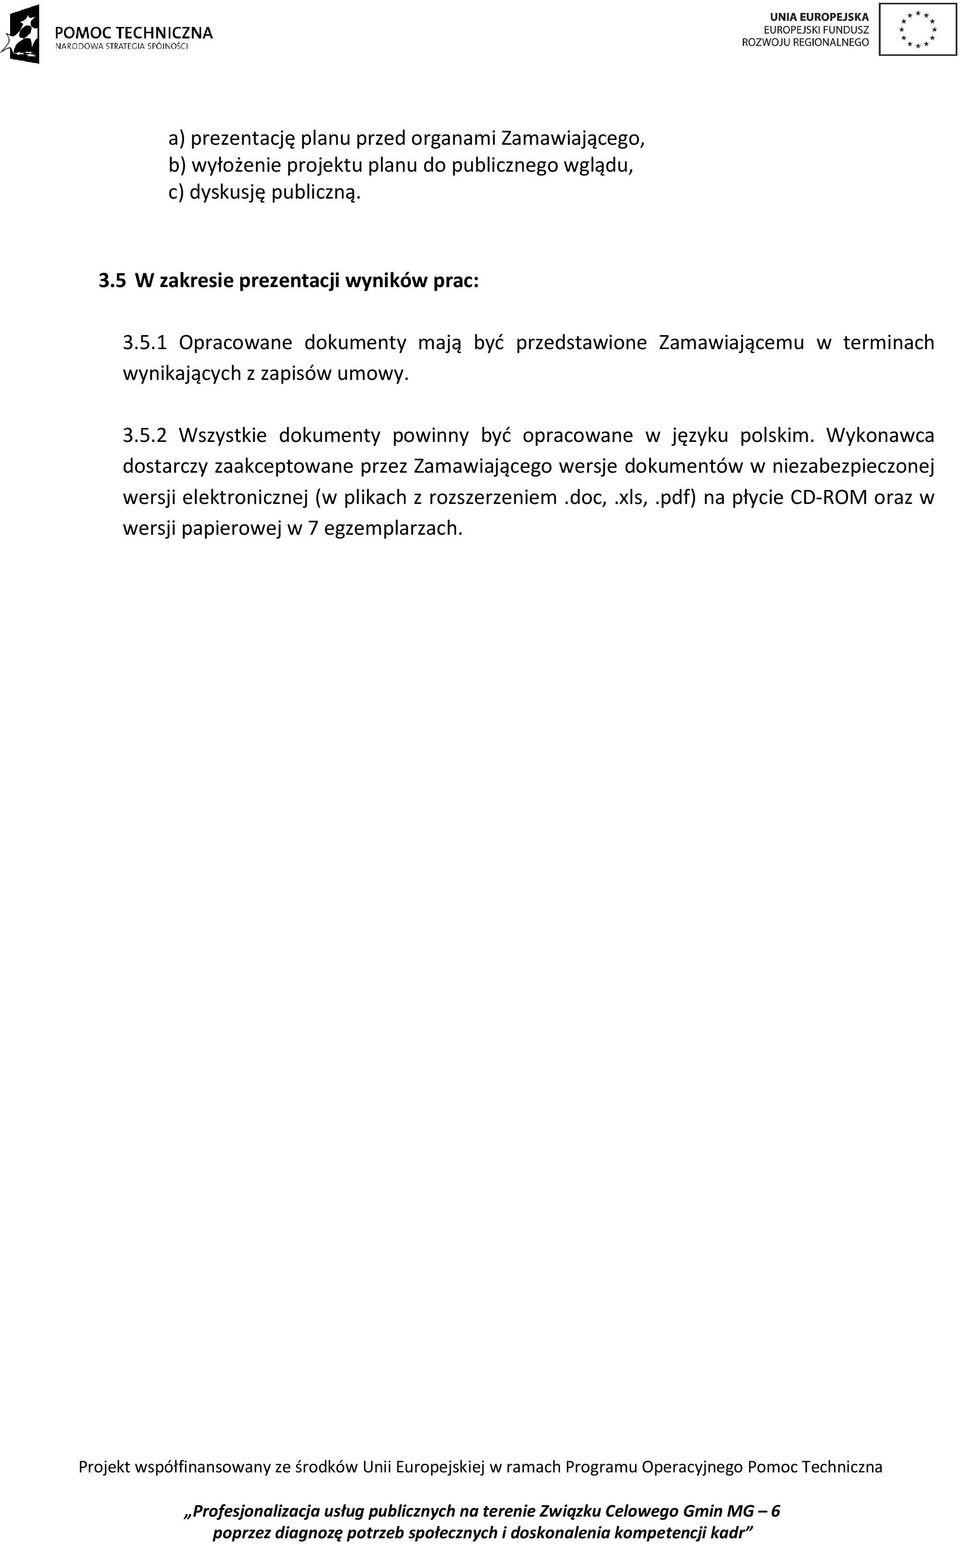 3.5.2 Wszystkie dokumenty powinny być opracowane w języku polskim.